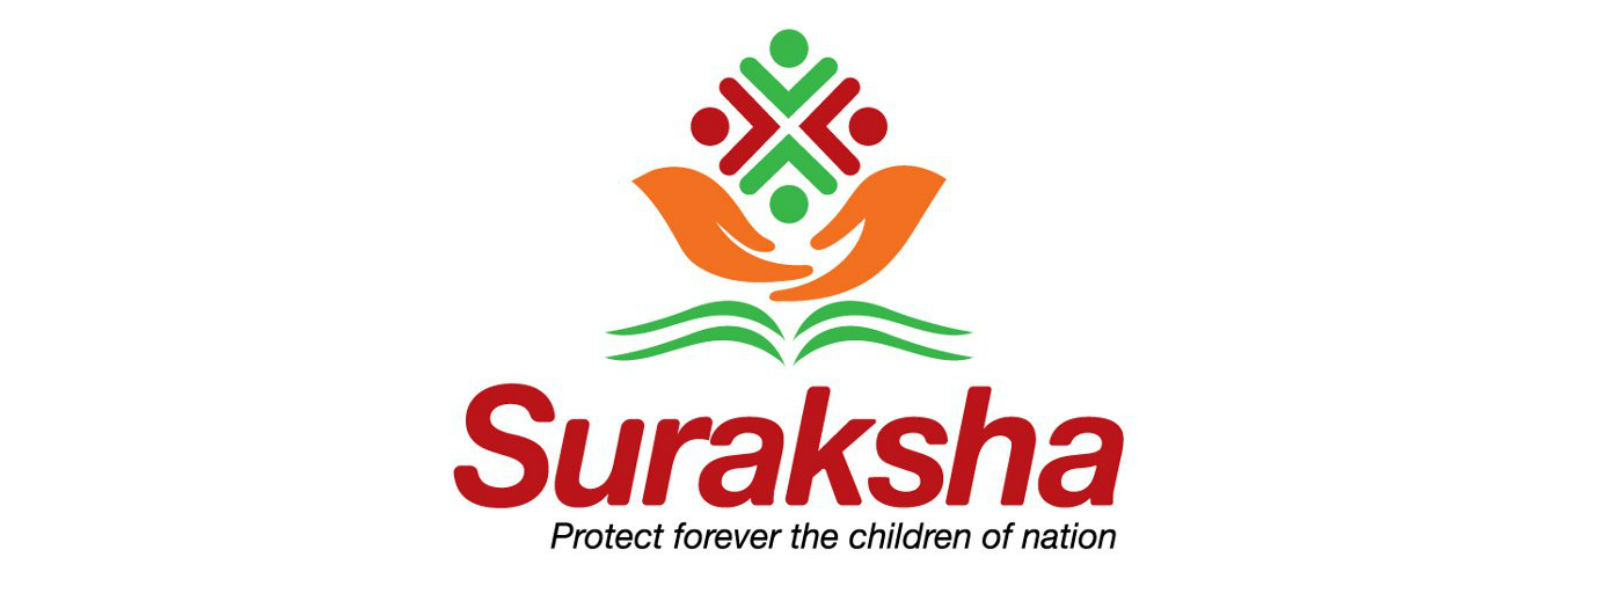 Suraksha insurance scheme temporarily discontinued